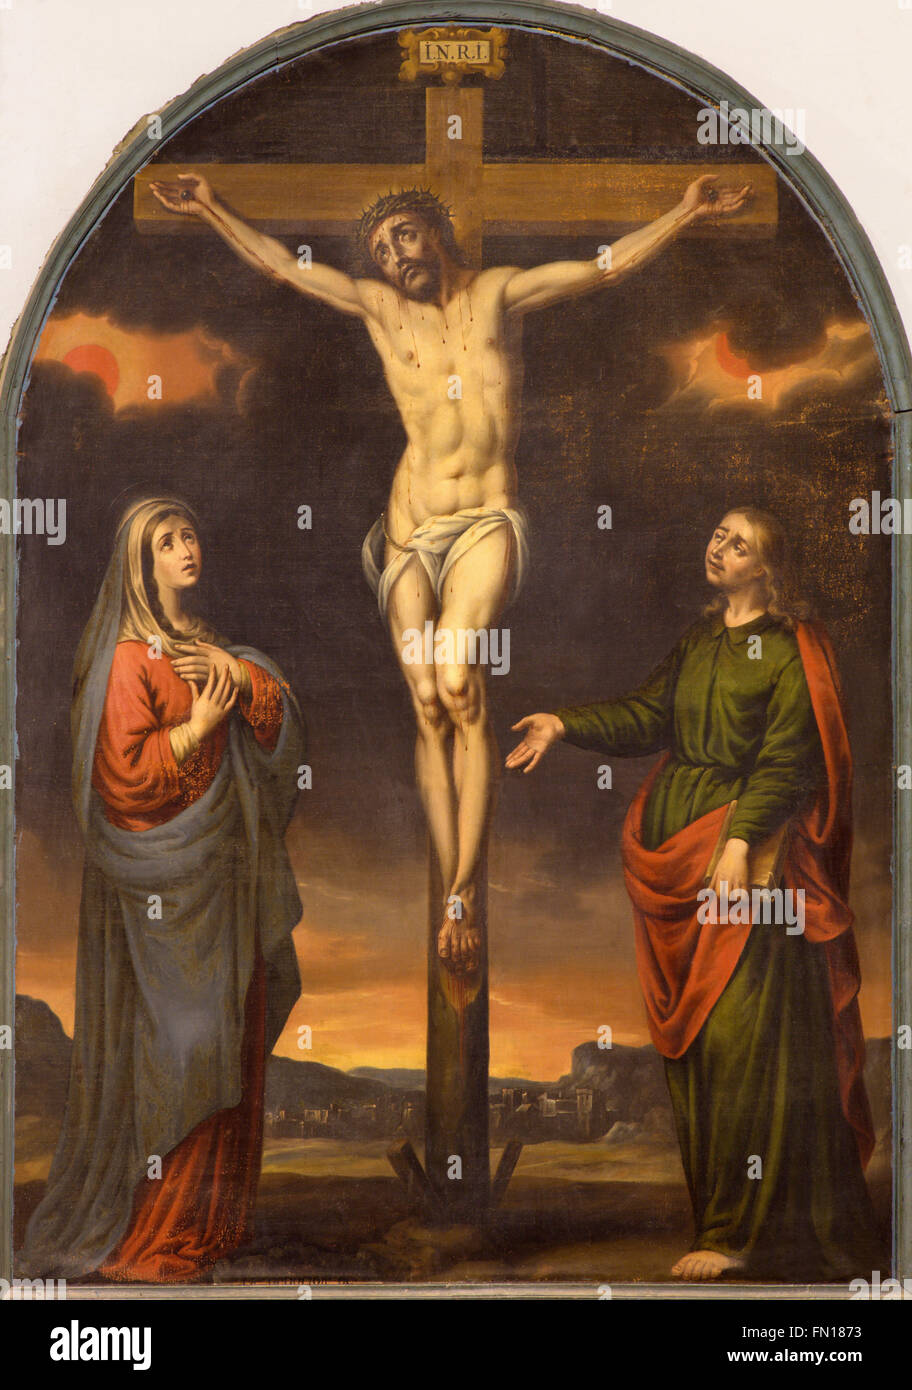 GRANADA, España - 29 de mayo de 2015: la crucifixión de pintura en la iglesia monasterio de San Jerónimo por artista desconocido del 17%. Foto de stock